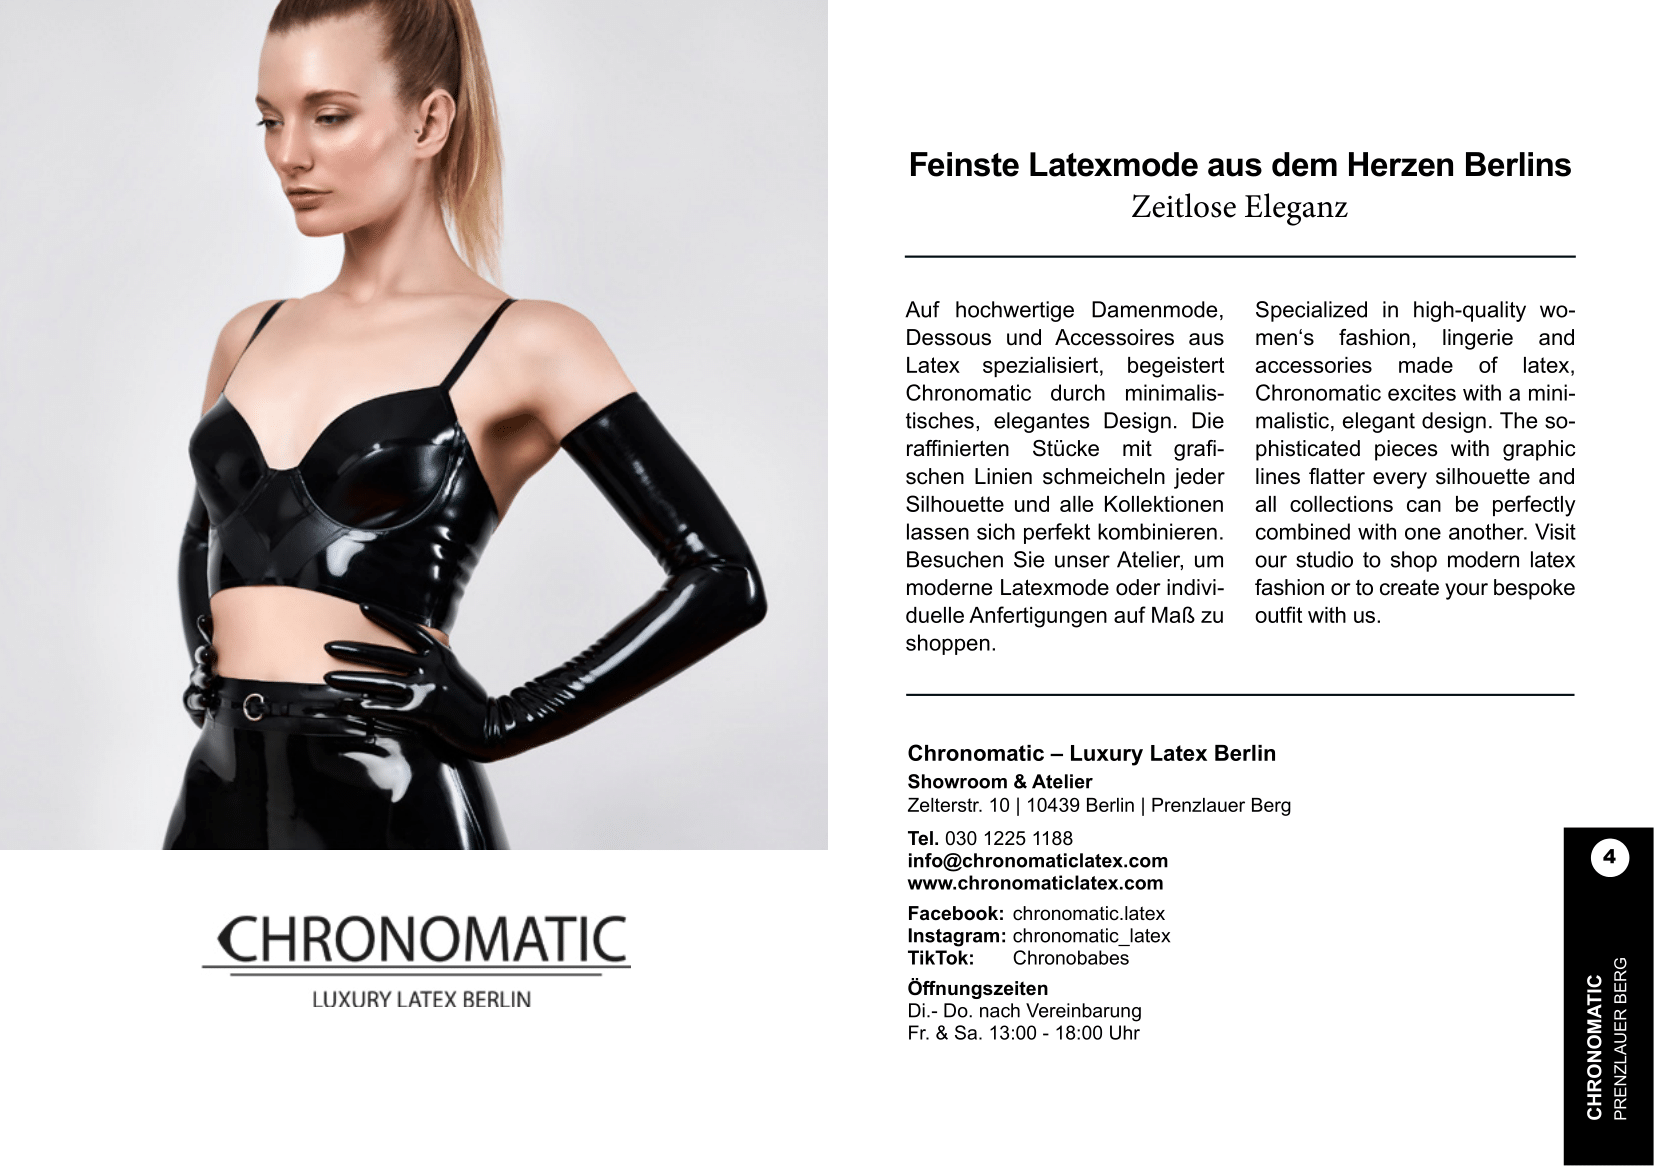 Chronomatic – Luxury Latex Berlin